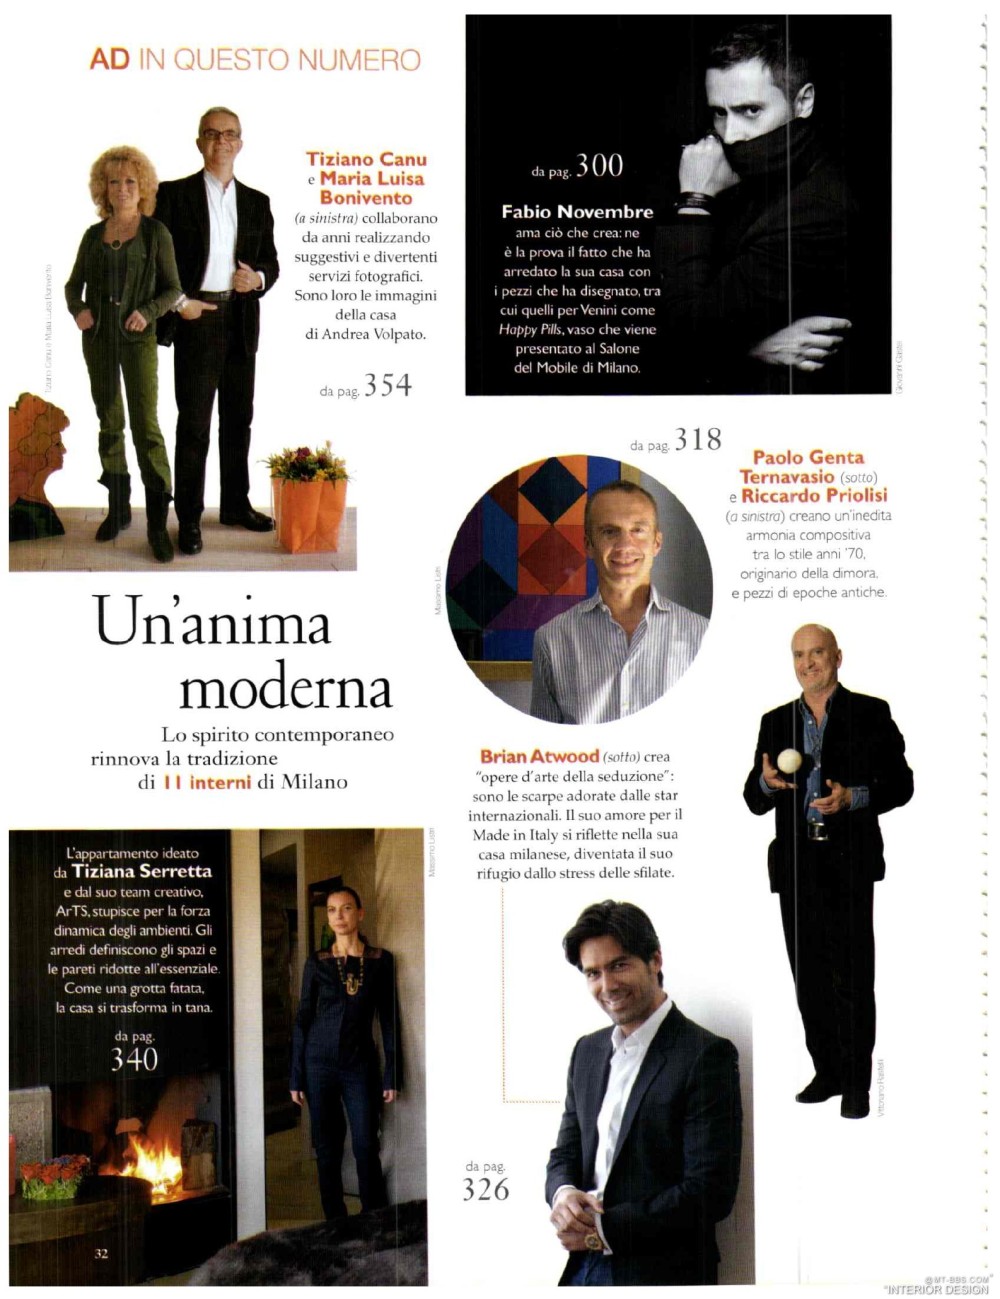 意大利AD 杂志 2012年全年JPG高清版本 全免（上传完毕）_0034.jpg